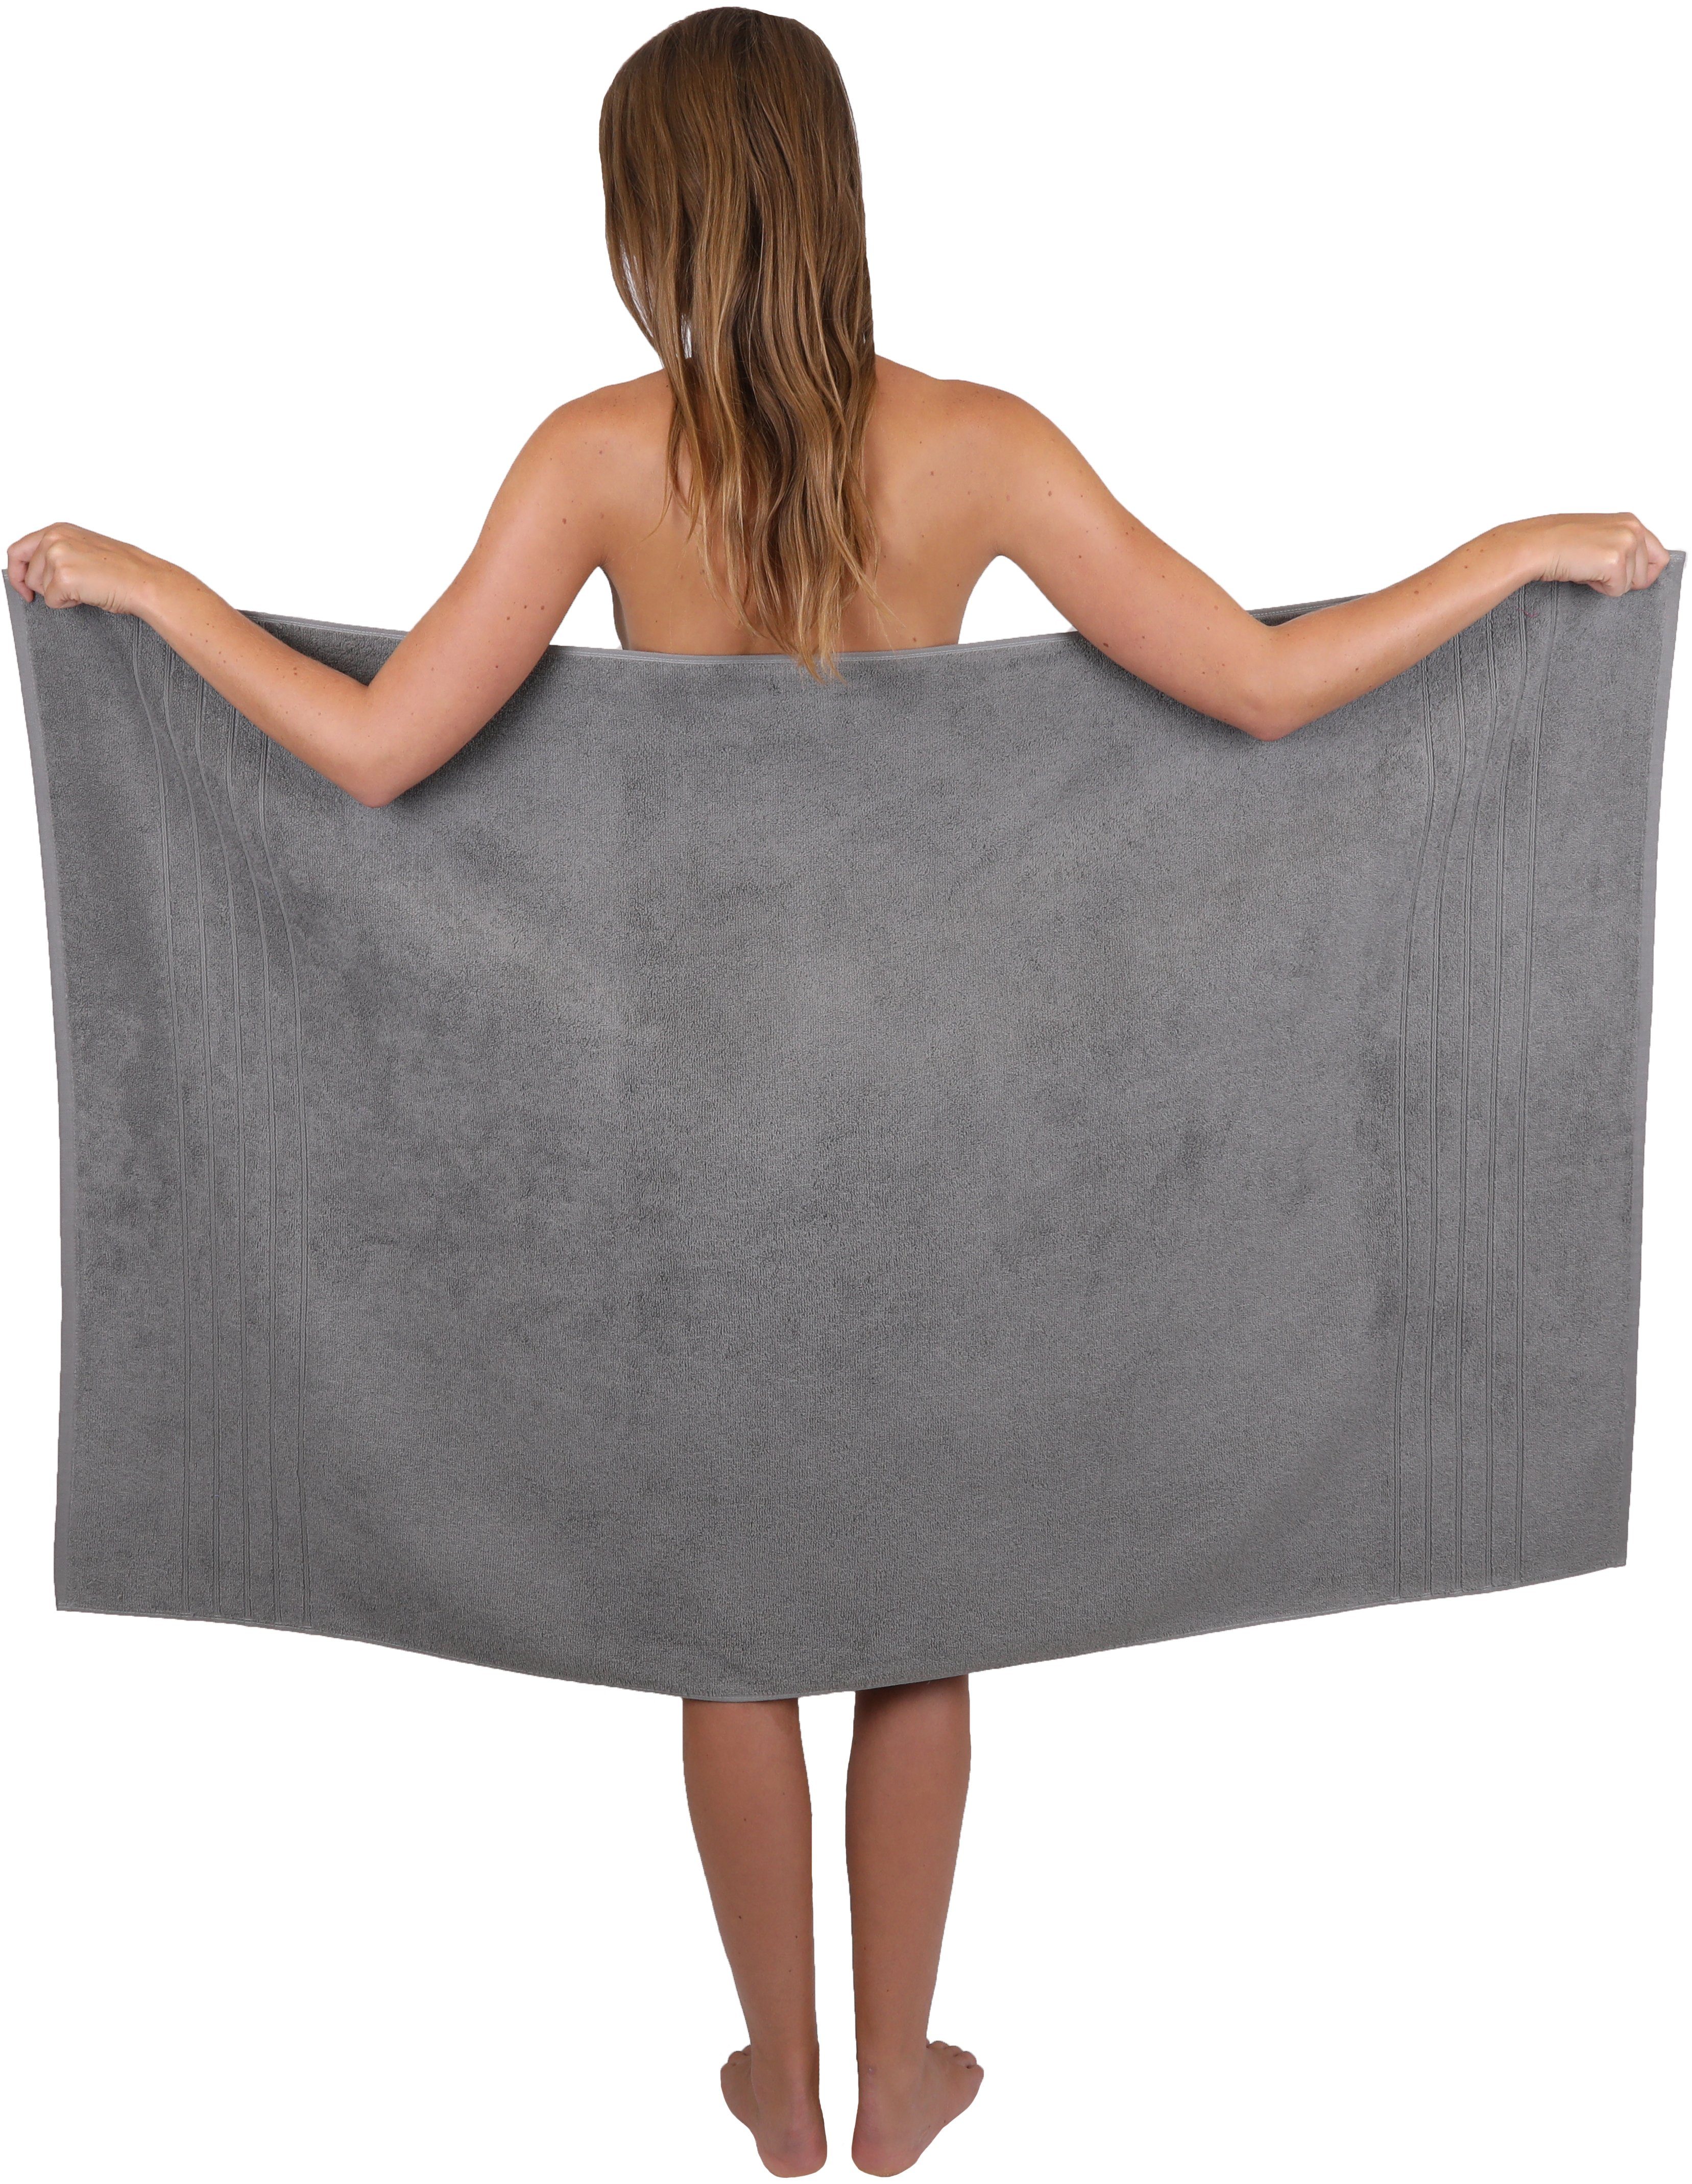 Farbe 2 Baumwolle, schwarz, Badetücher Betz anthrazit 2 Duschtücher Handtuch Baumwolle 100% 2 8-TLG. 2 Handtuch-Set (8-tlg) grau Handtücher Seiftücher und Deluxe Set 100%